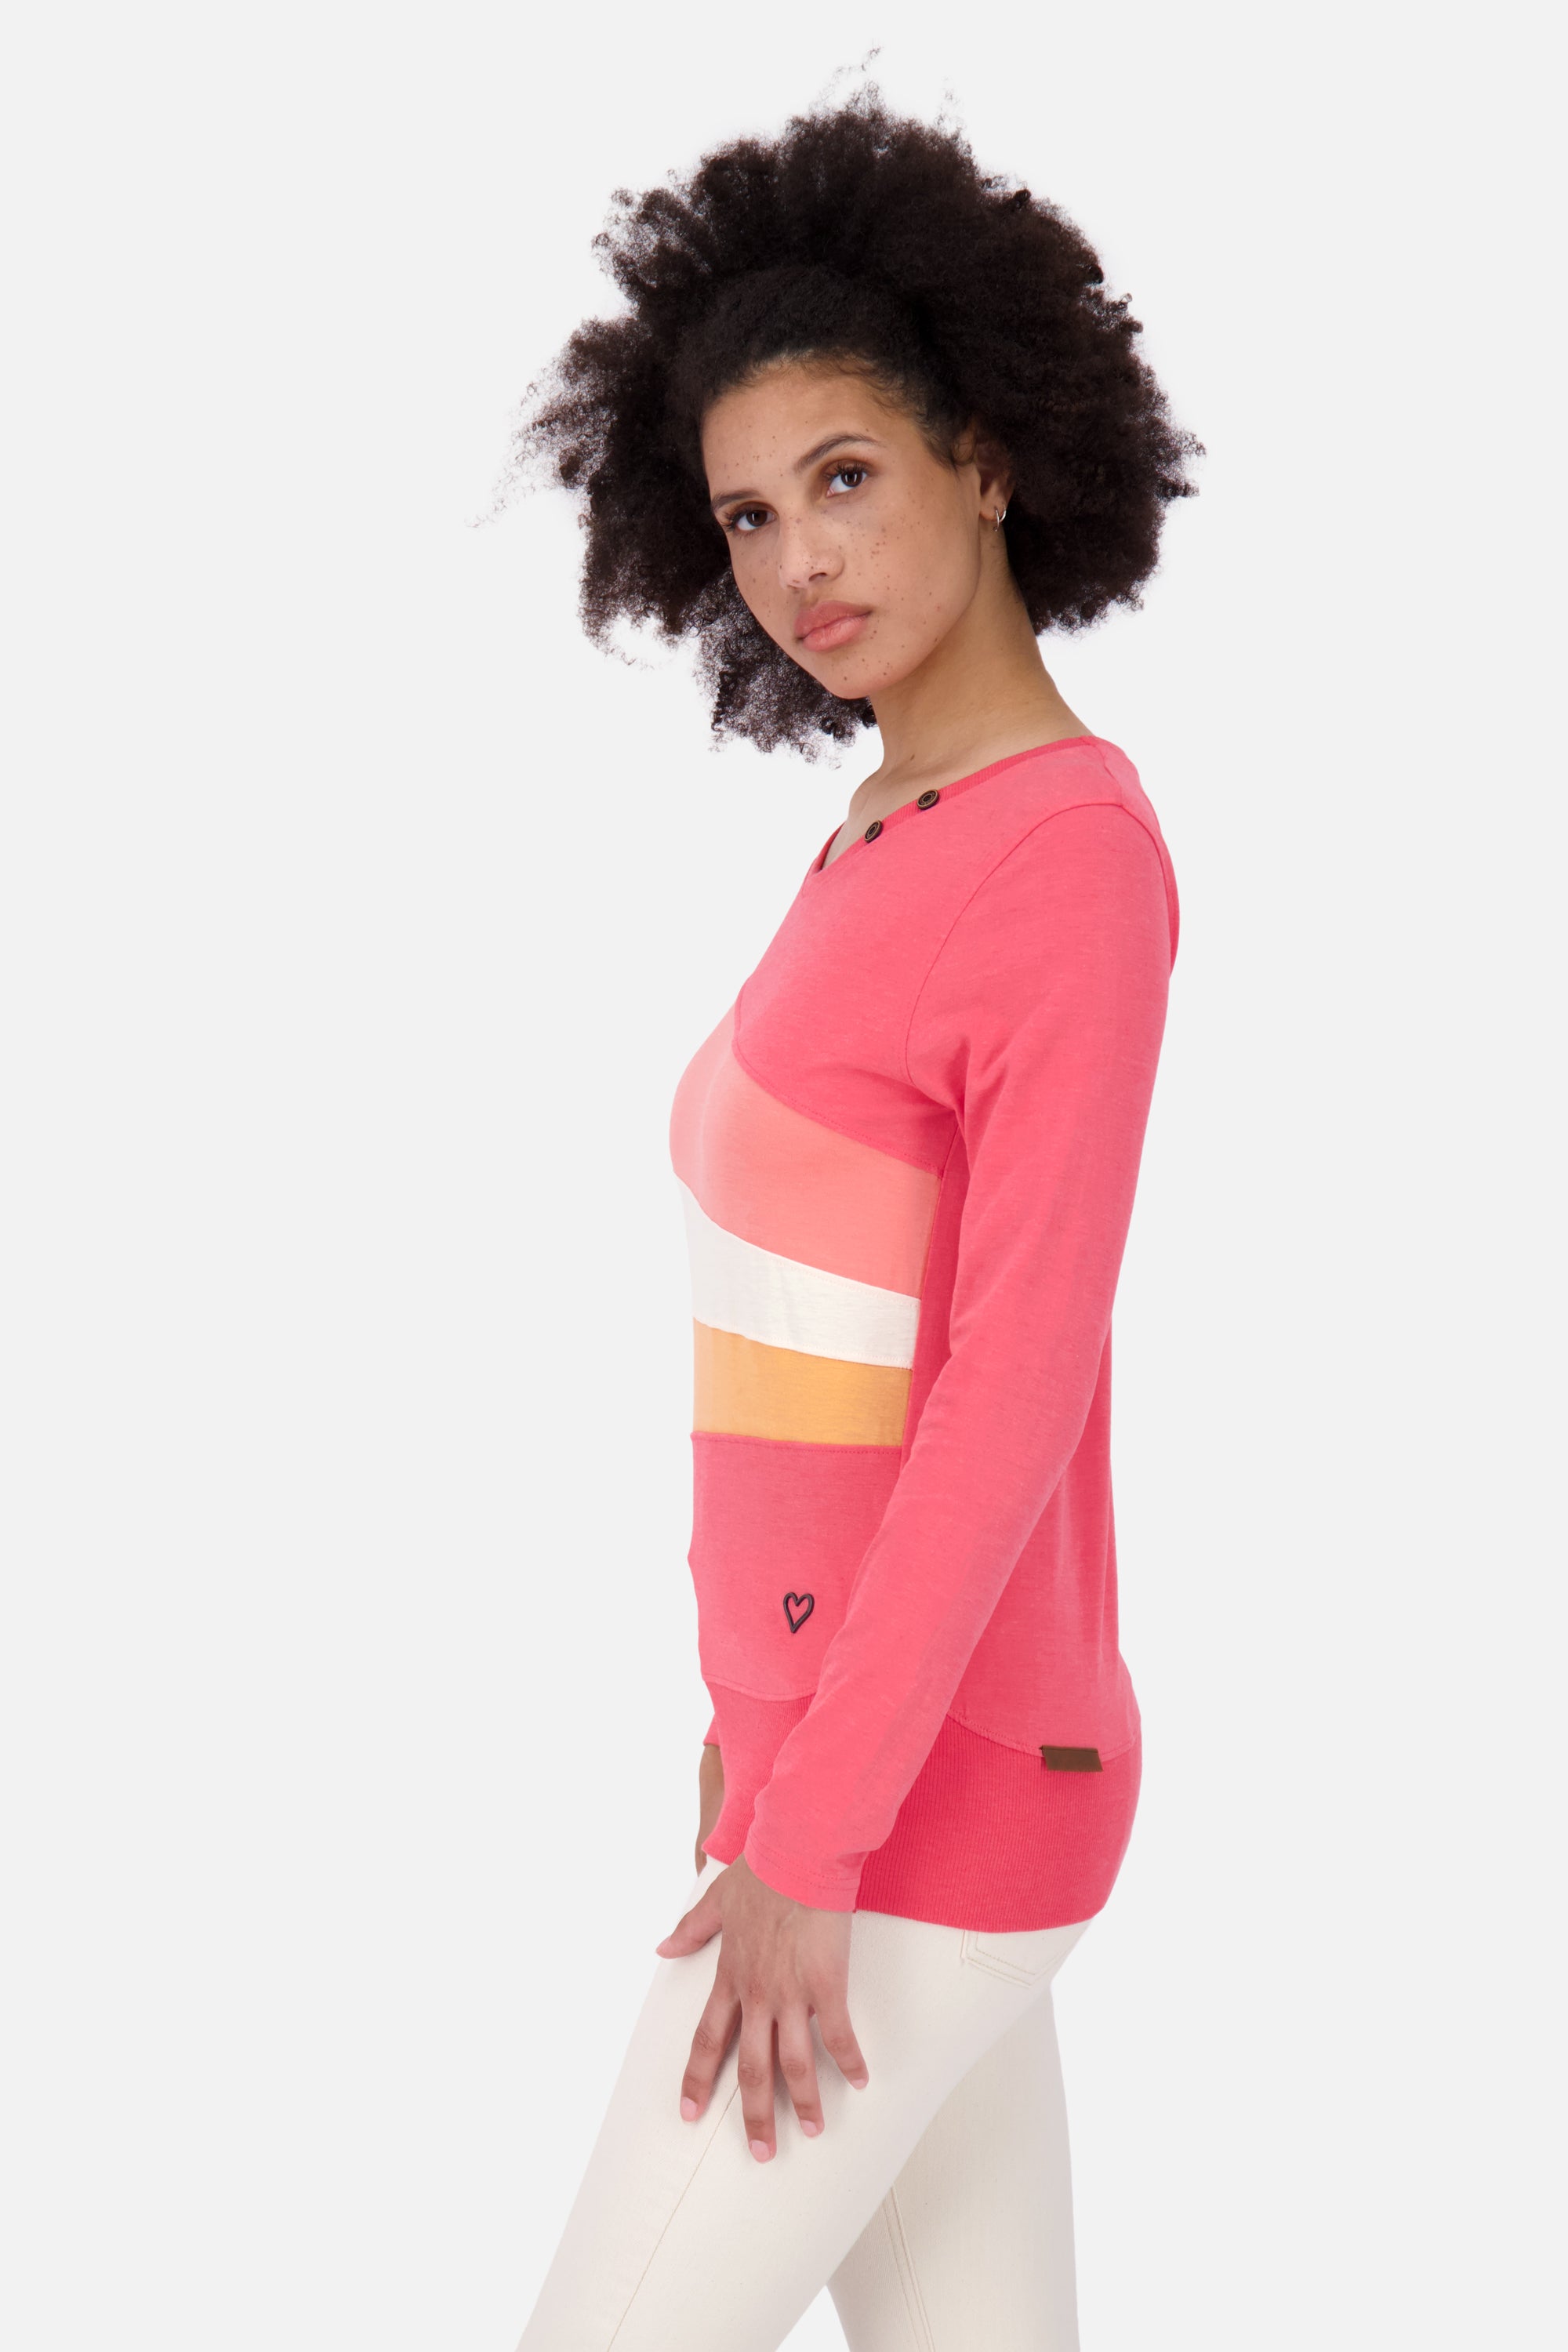 CliaAK A Langarmshirt Damen: Colourblocking-Streifen für einen einzigartigen Look Rot